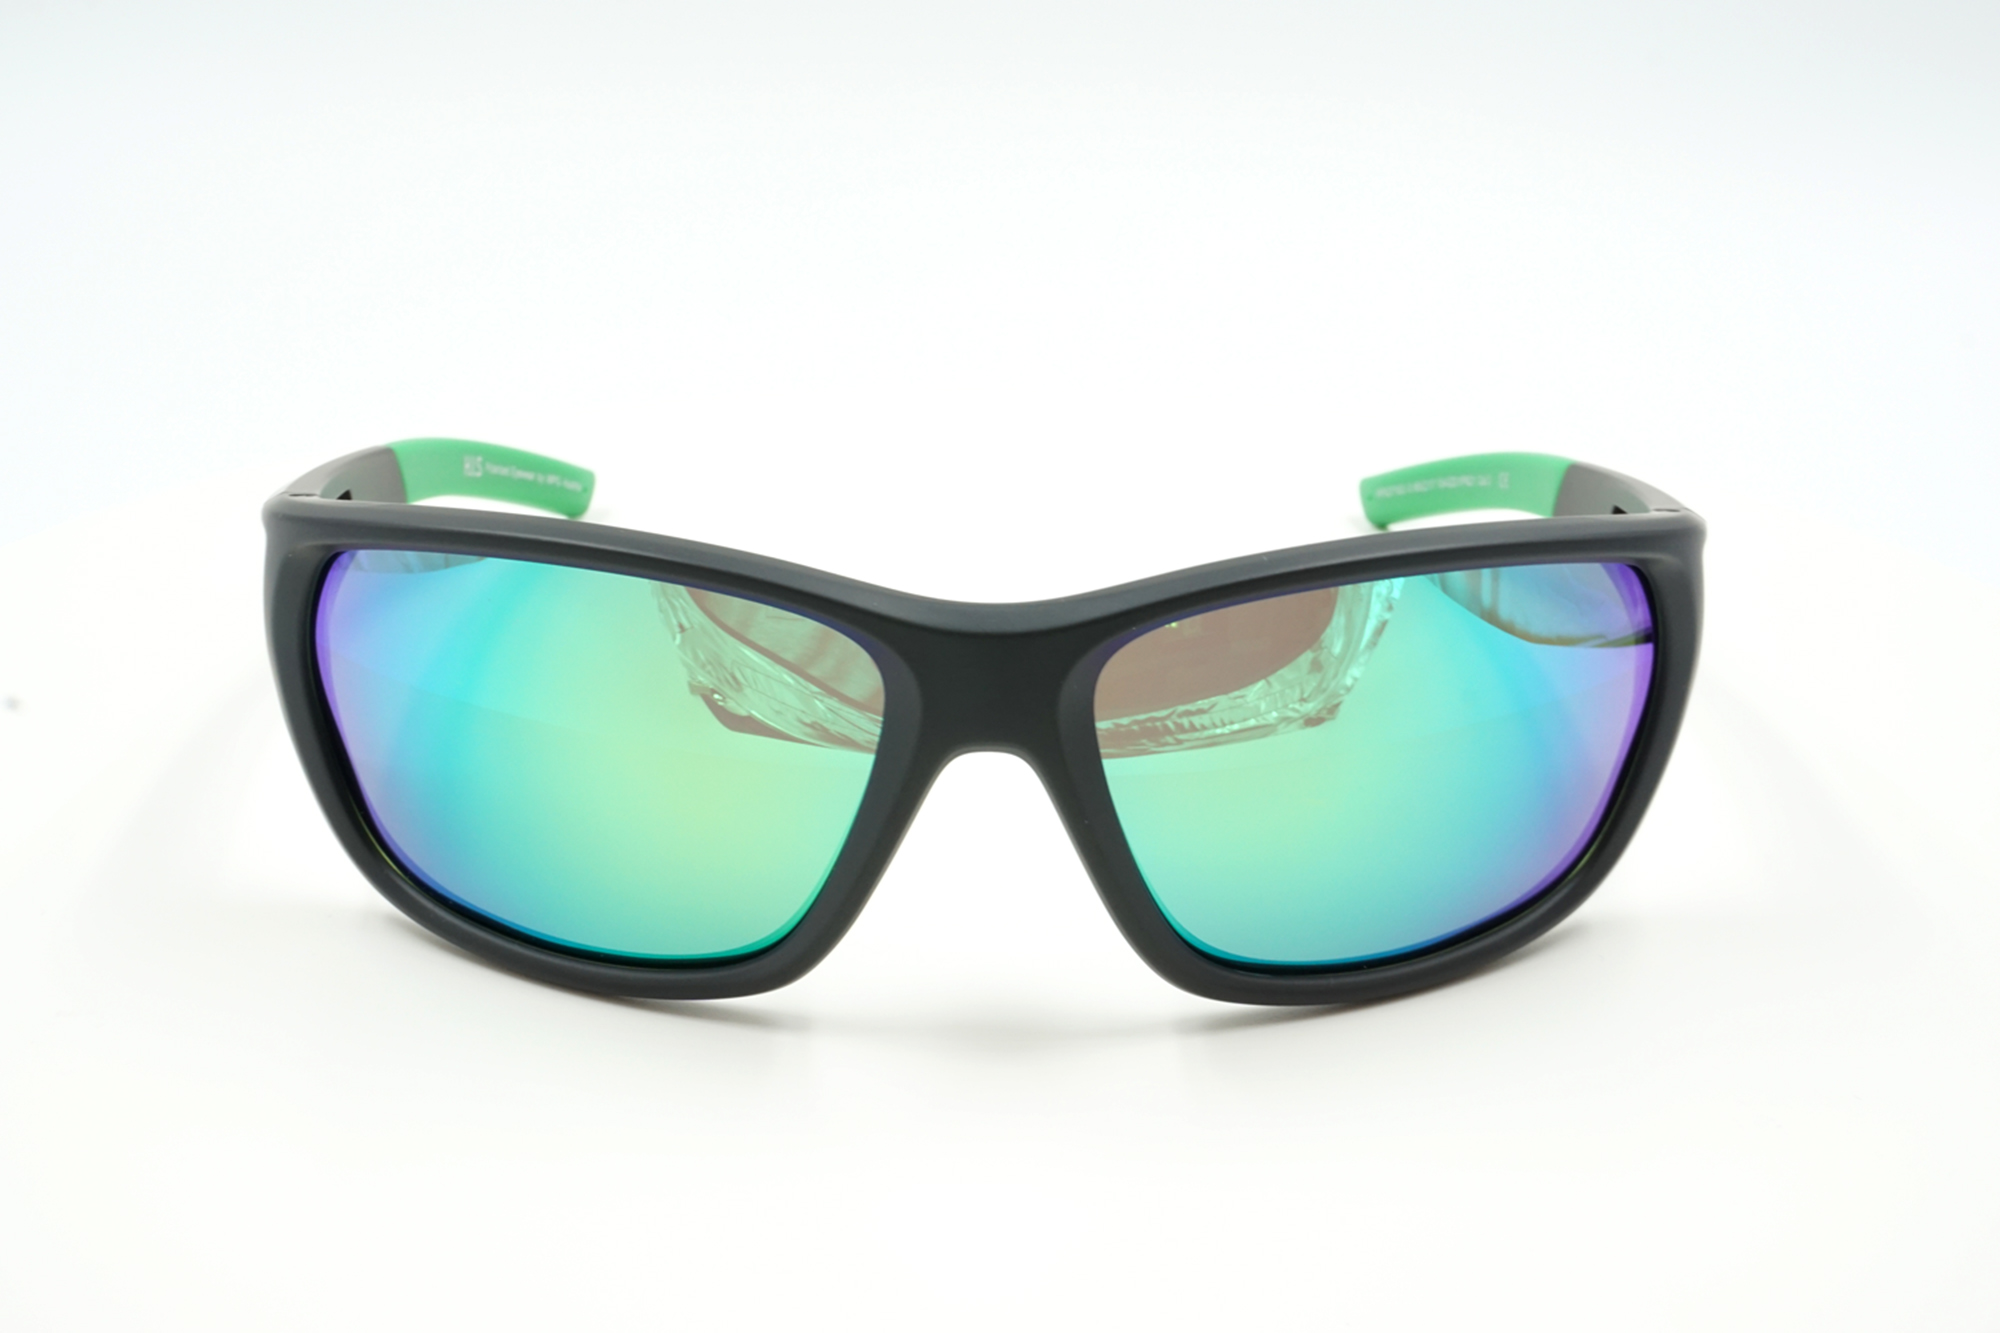 Sonnenbrille Rider grün